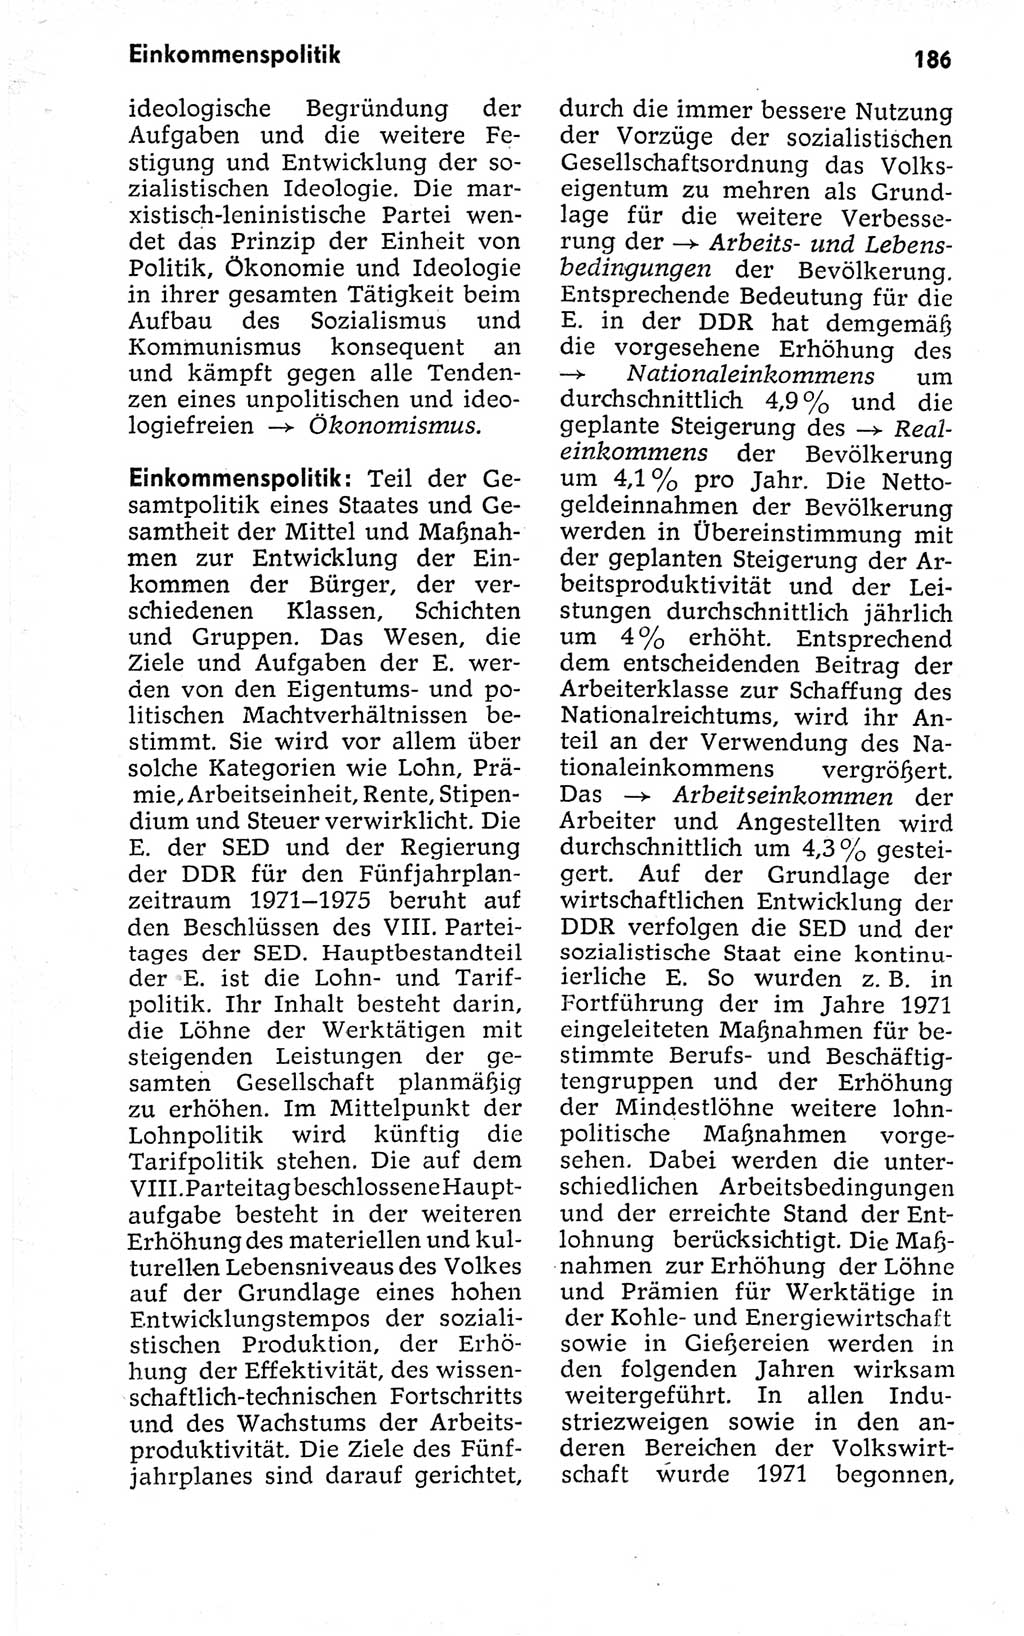 Kleines politisches Wörterbuch [Deutsche Demokratische Republik (DDR)] 1973, Seite 186 (Kl. pol. Wb. DDR 1973, S. 186)